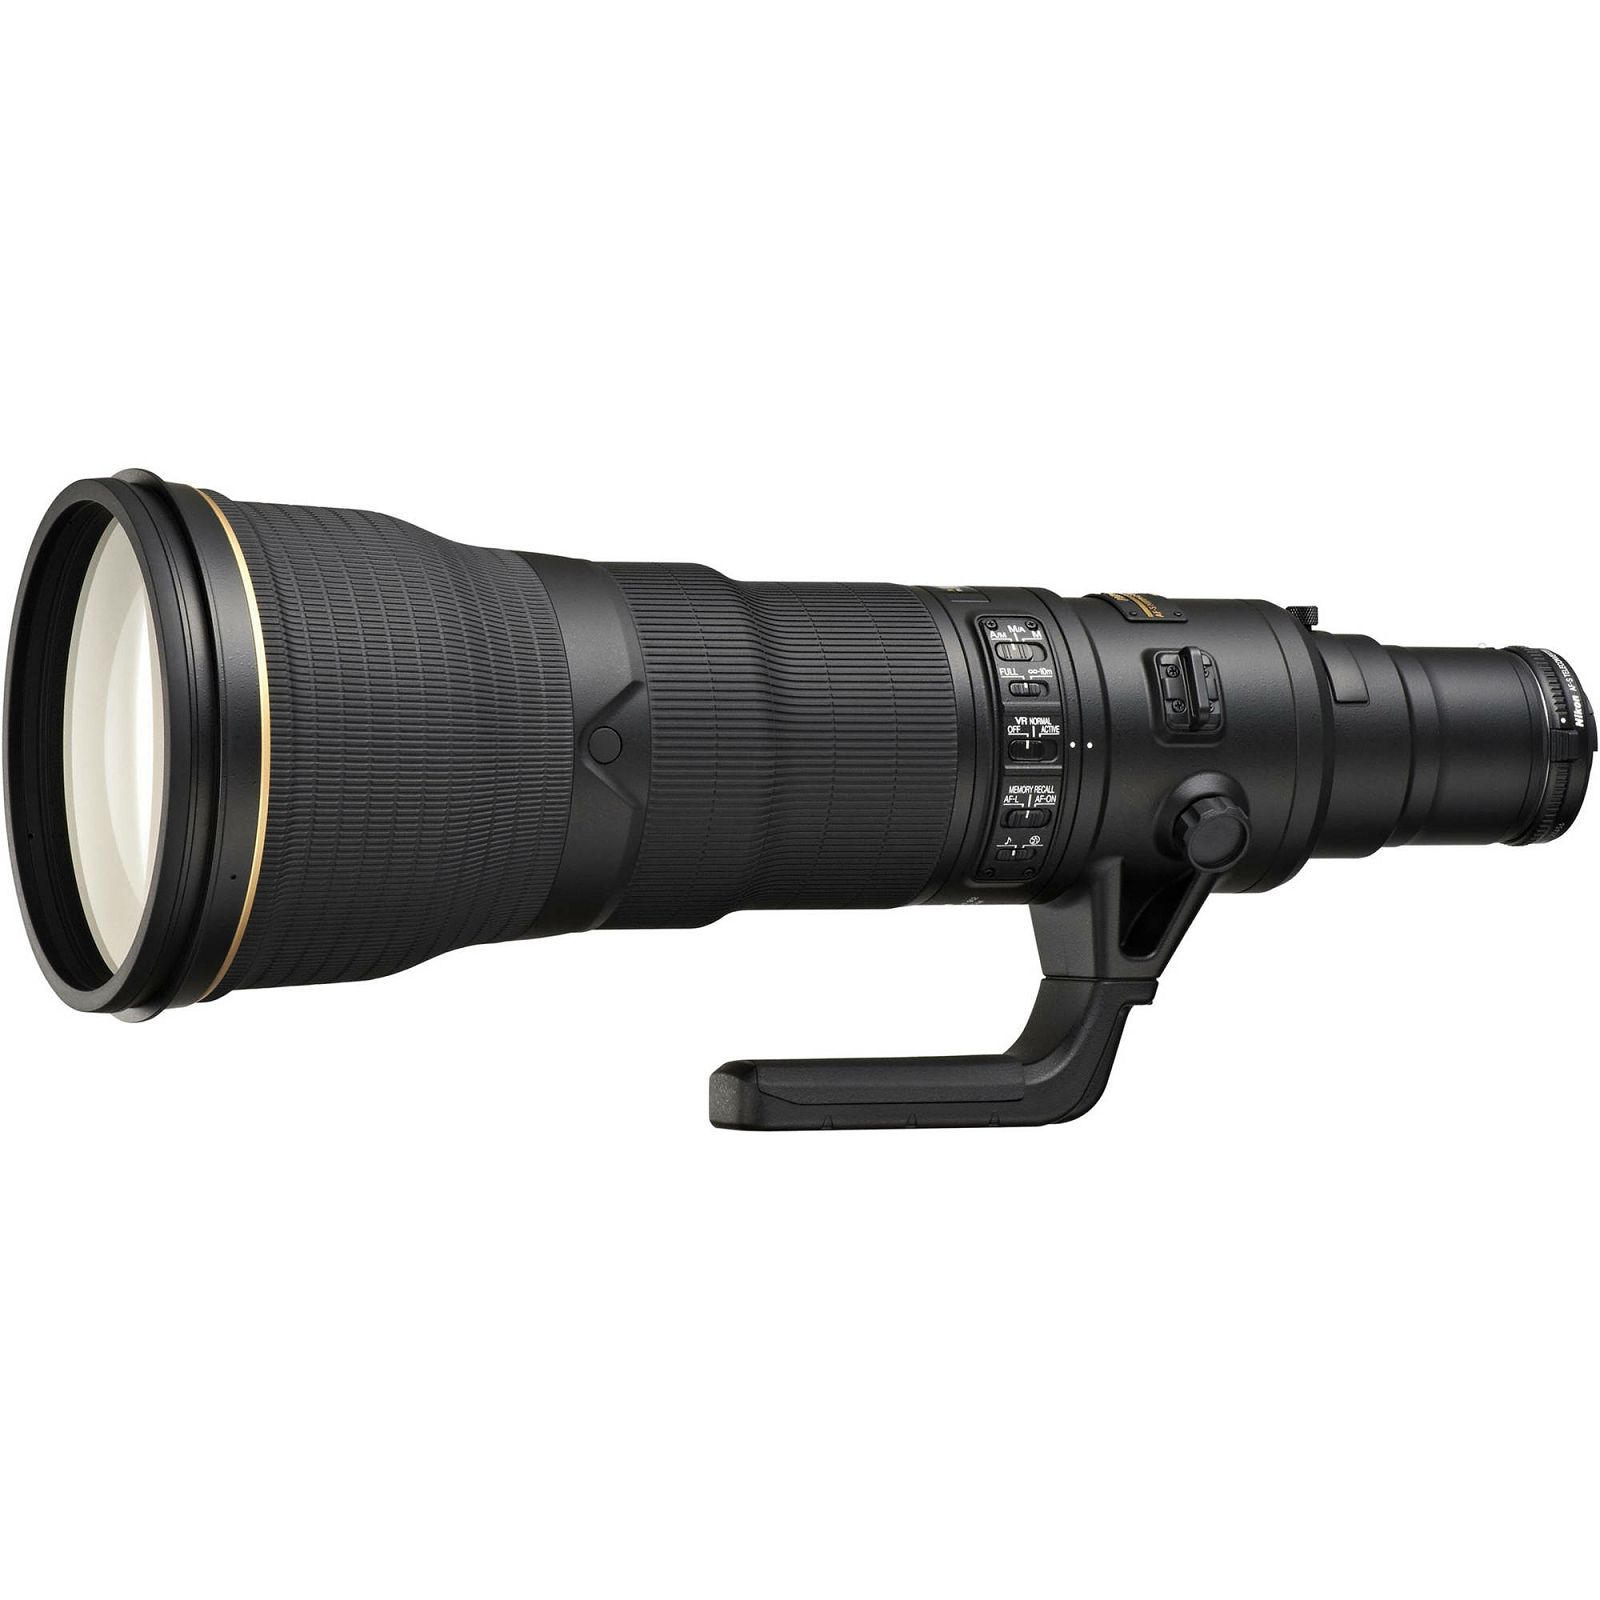 Nikon AF-S 800mm f/5.6E FL ED VR + AF-S TC800-1.25E ED FX telefoto objektiv fiksne žarišne duljine s integriranim konverterom Nikkor auto focus prime lens 800 f/5.6 E F5.6 F5.6E (JAA531DA)